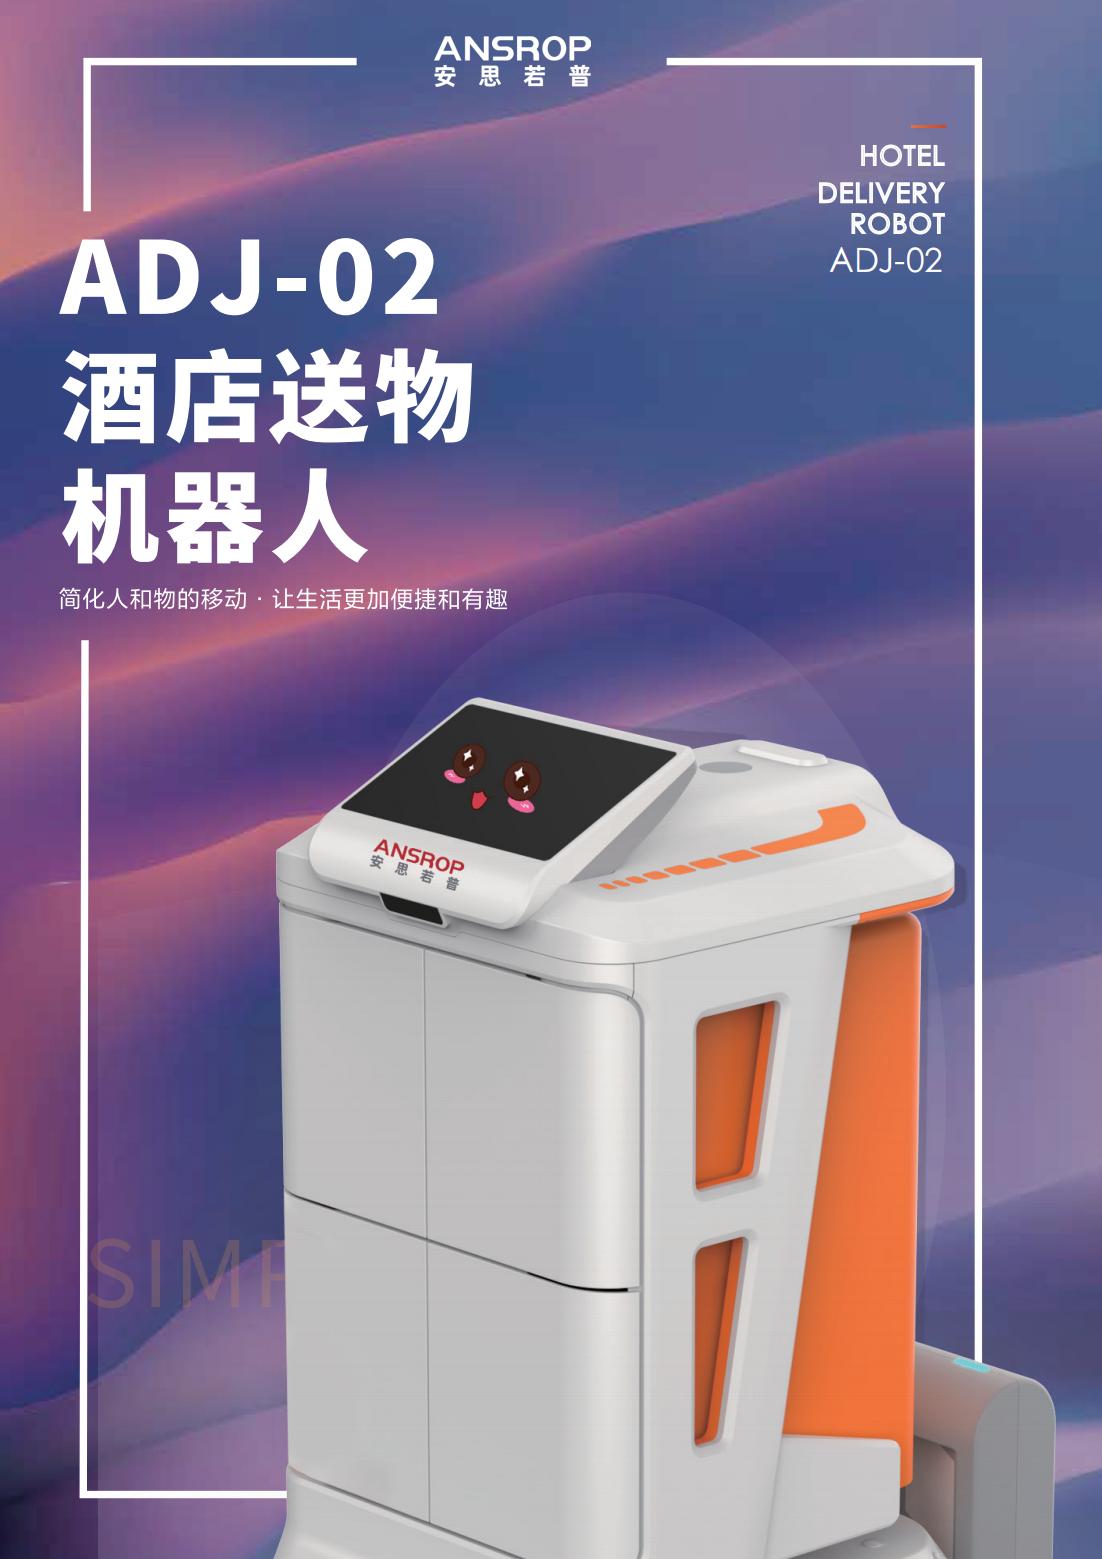 ADJ-02